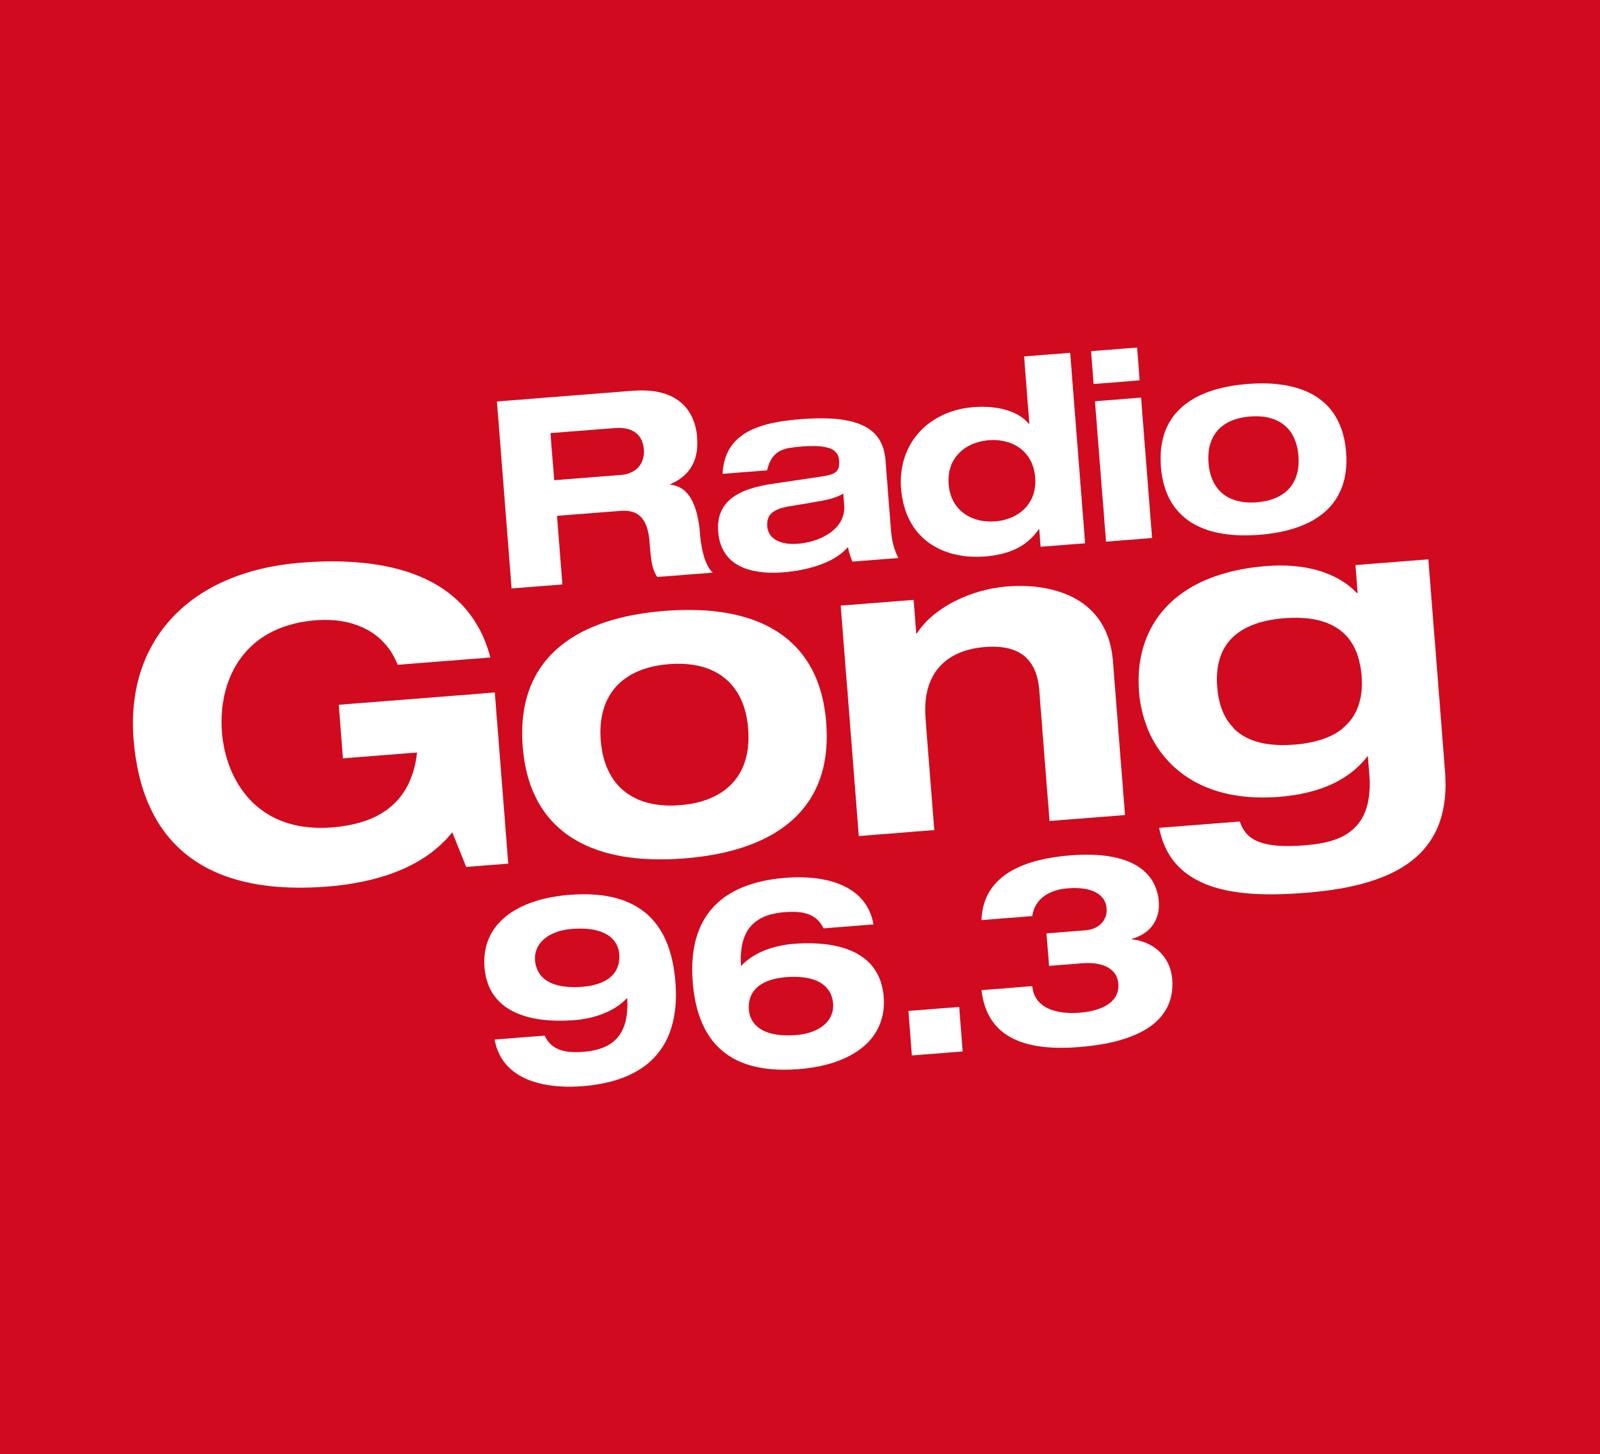 Logo Radio Gong